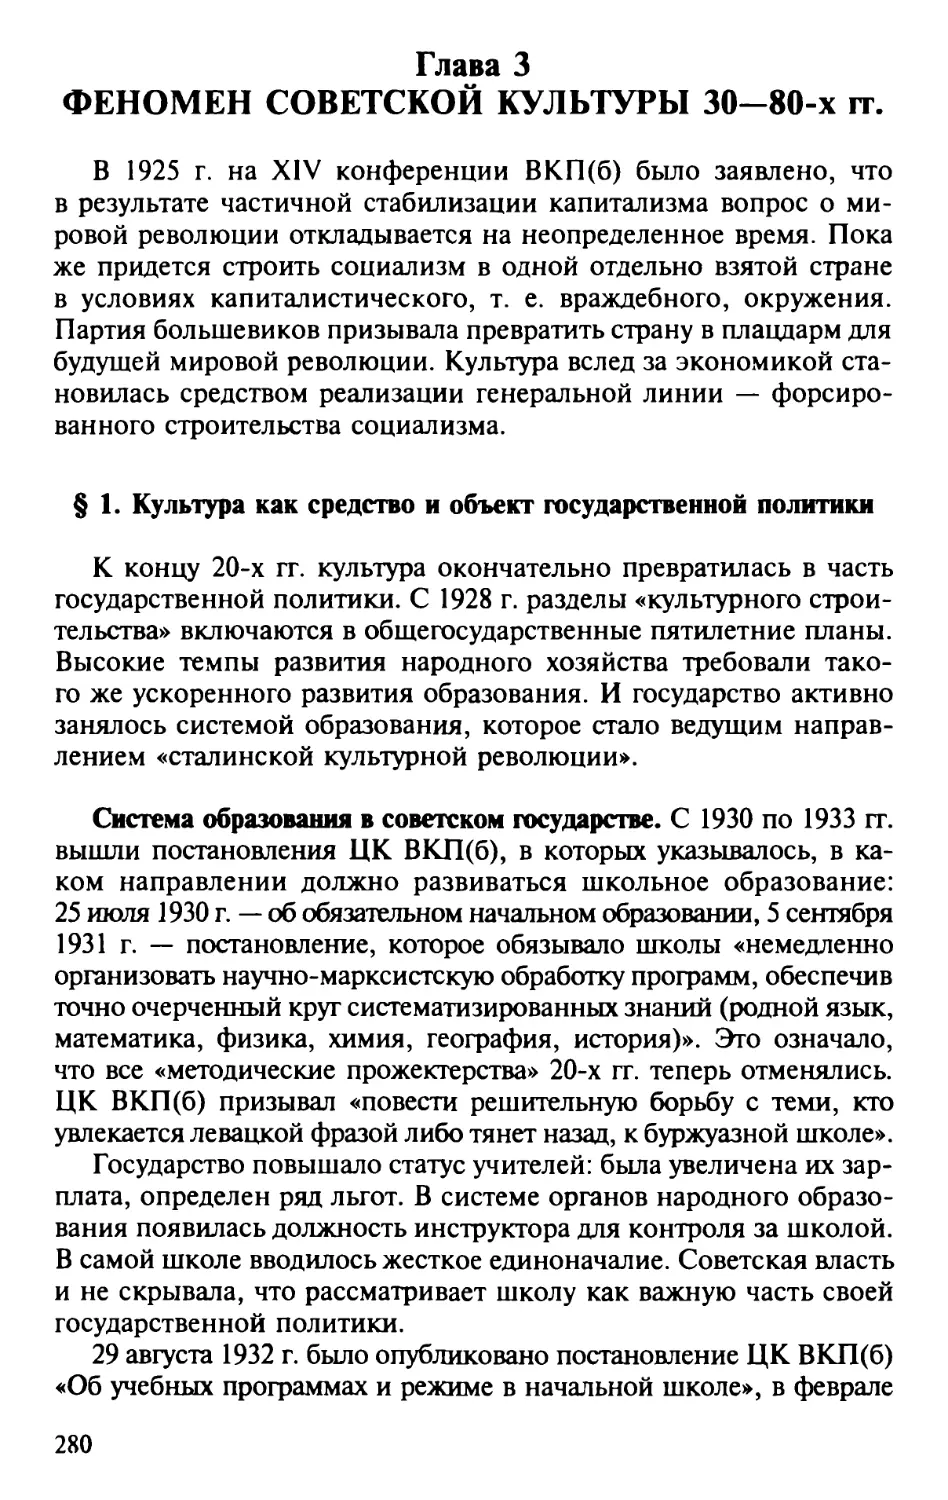 Глава 3. Феномен советской культуры 30 – 80-х гг.
§ 1. Культура как средство и объект государственной политики